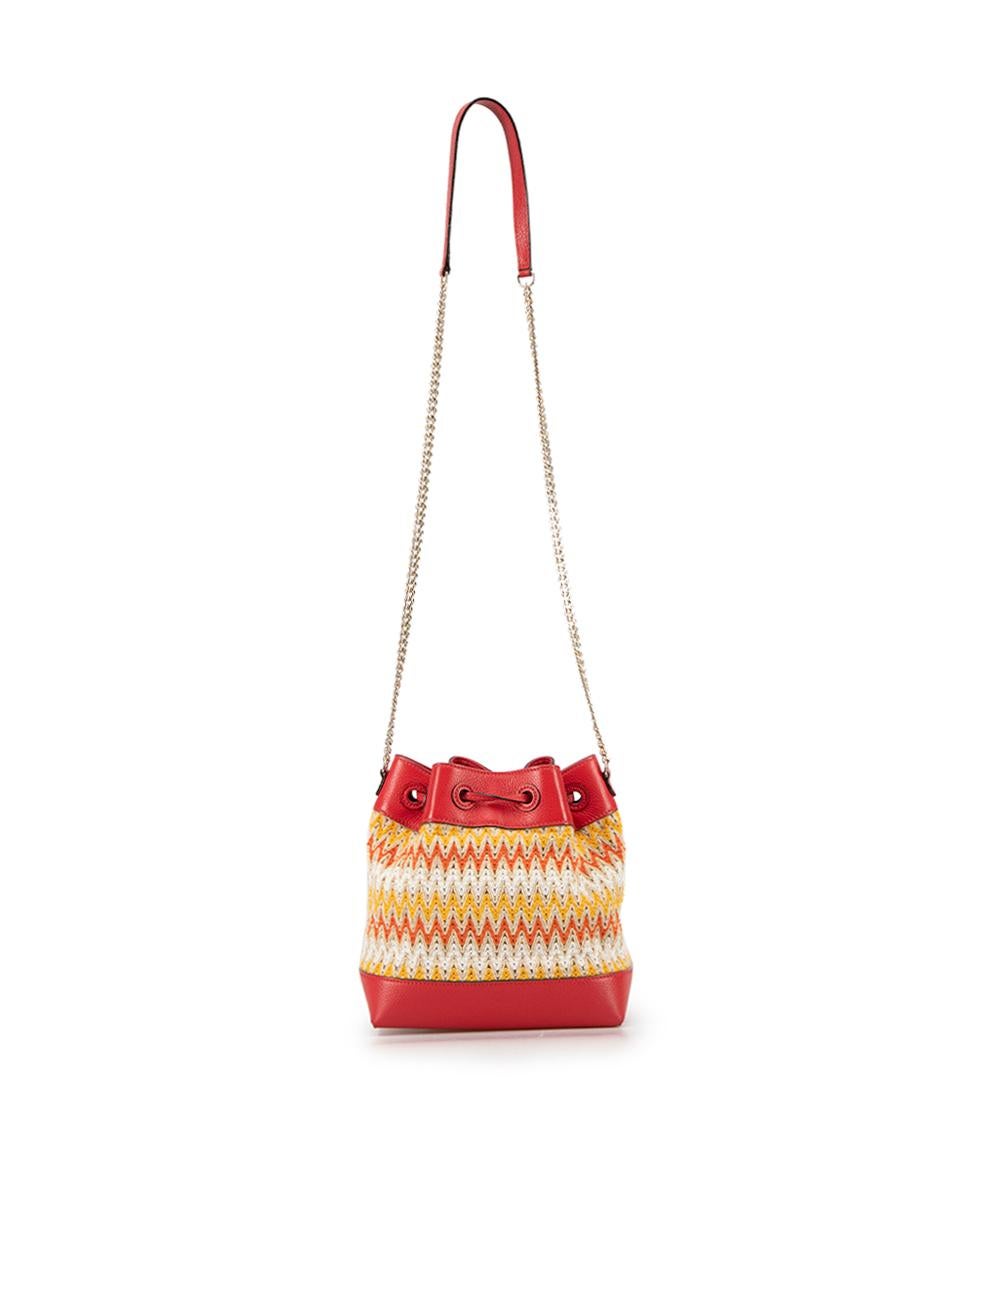 Orange Jimmy Choo Women's Red Leather Luzetta Woven Bucket Bag For Sale